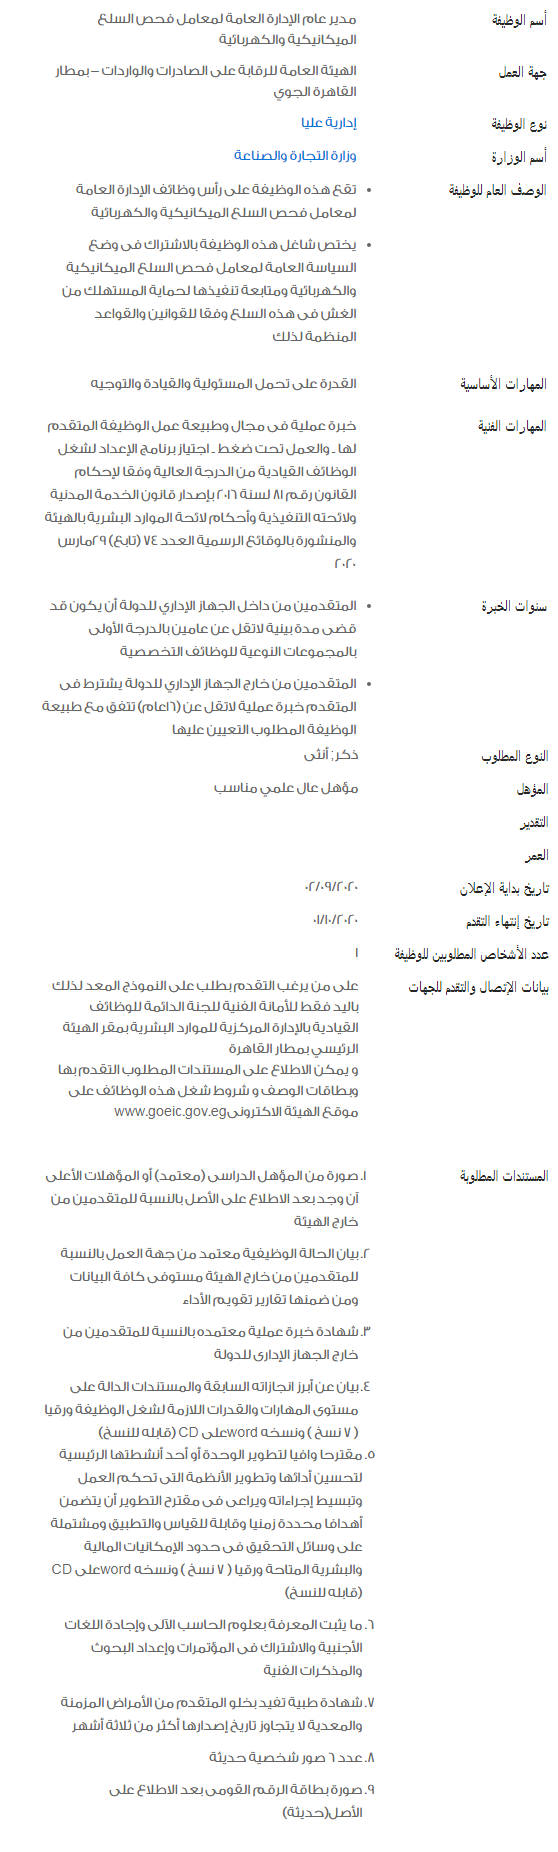 وظائف الحكومة المصرية لشهر سبتمبر 2020 2